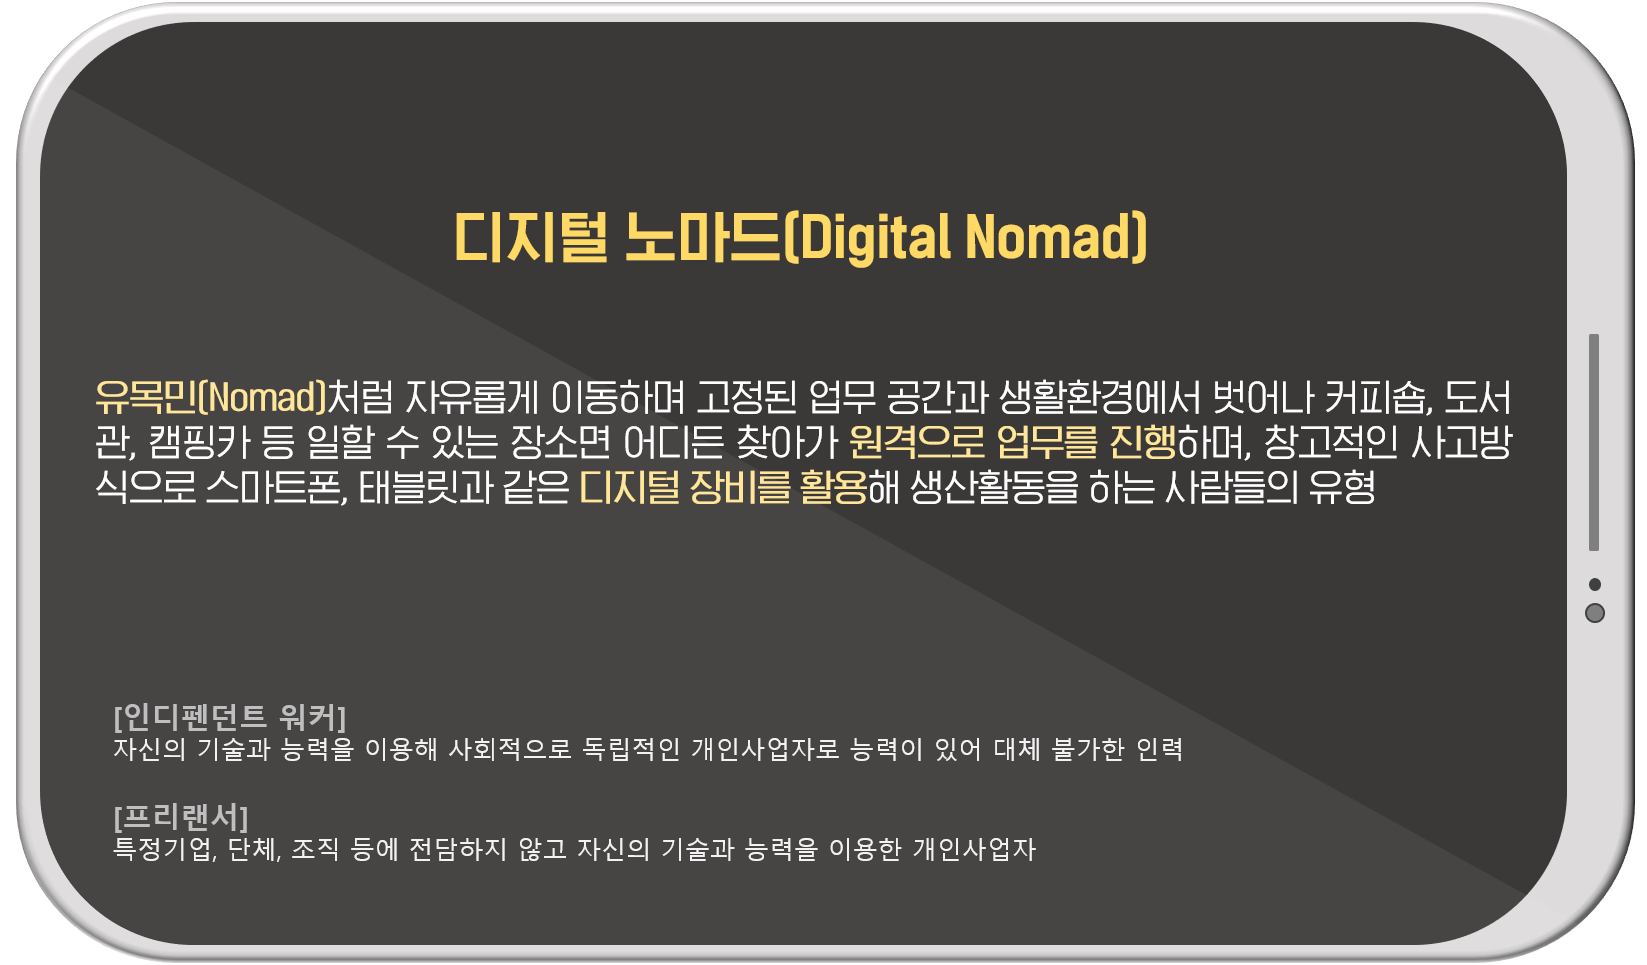 한국토익위원회 토익스토리 :: 프로 N잡러 시대! 부가 수익 창출하는 '디지털 노마드'를 꿈꾼다면?!